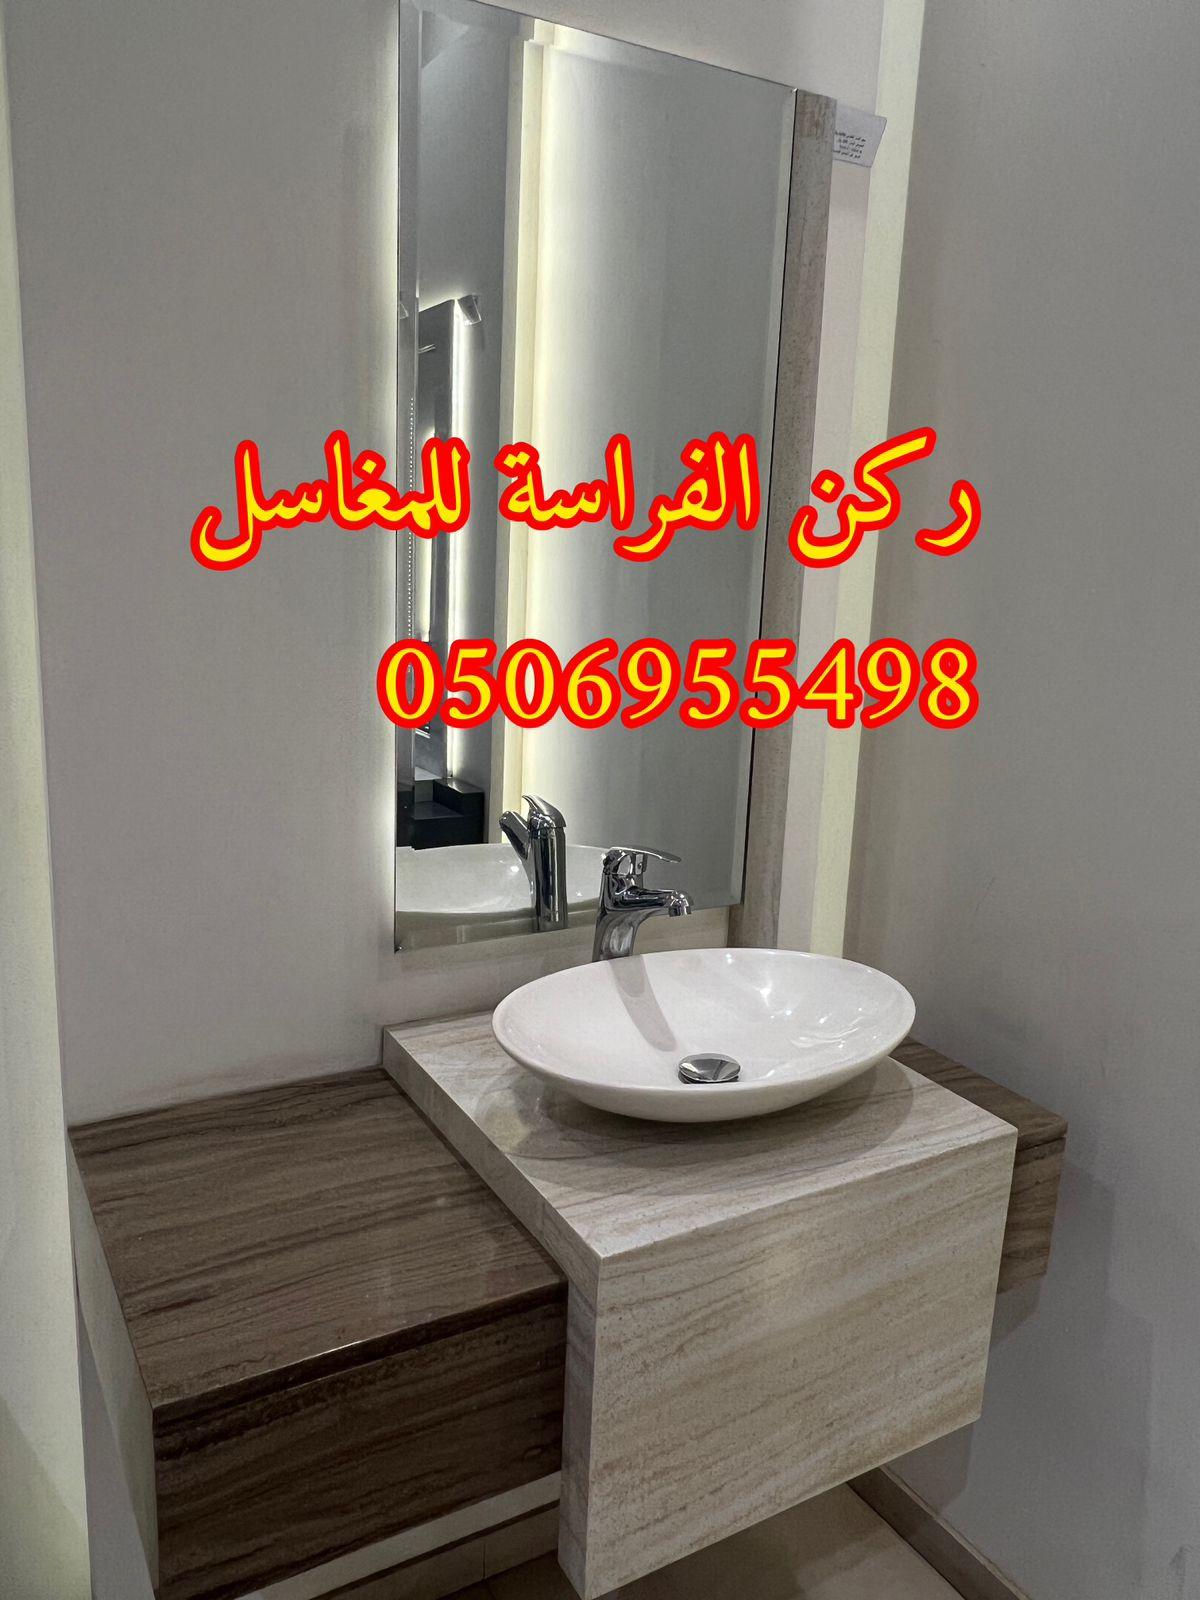 تصاميم مغاسل رخام للمجالس في الرياض,0506955498 868453005